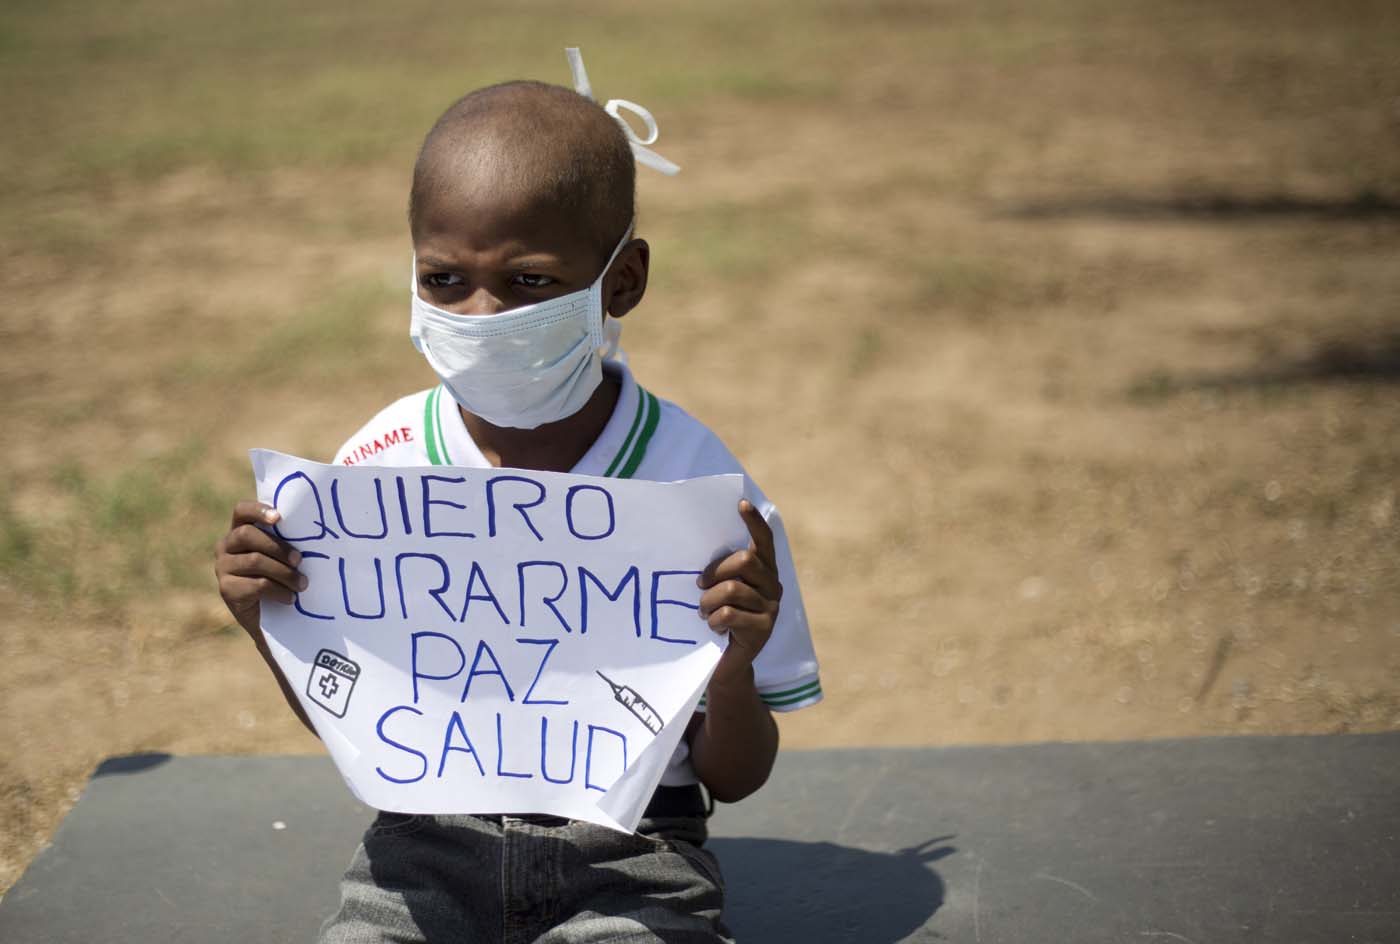  Crisis de salud en Venezuela estalla tras muerte de menor